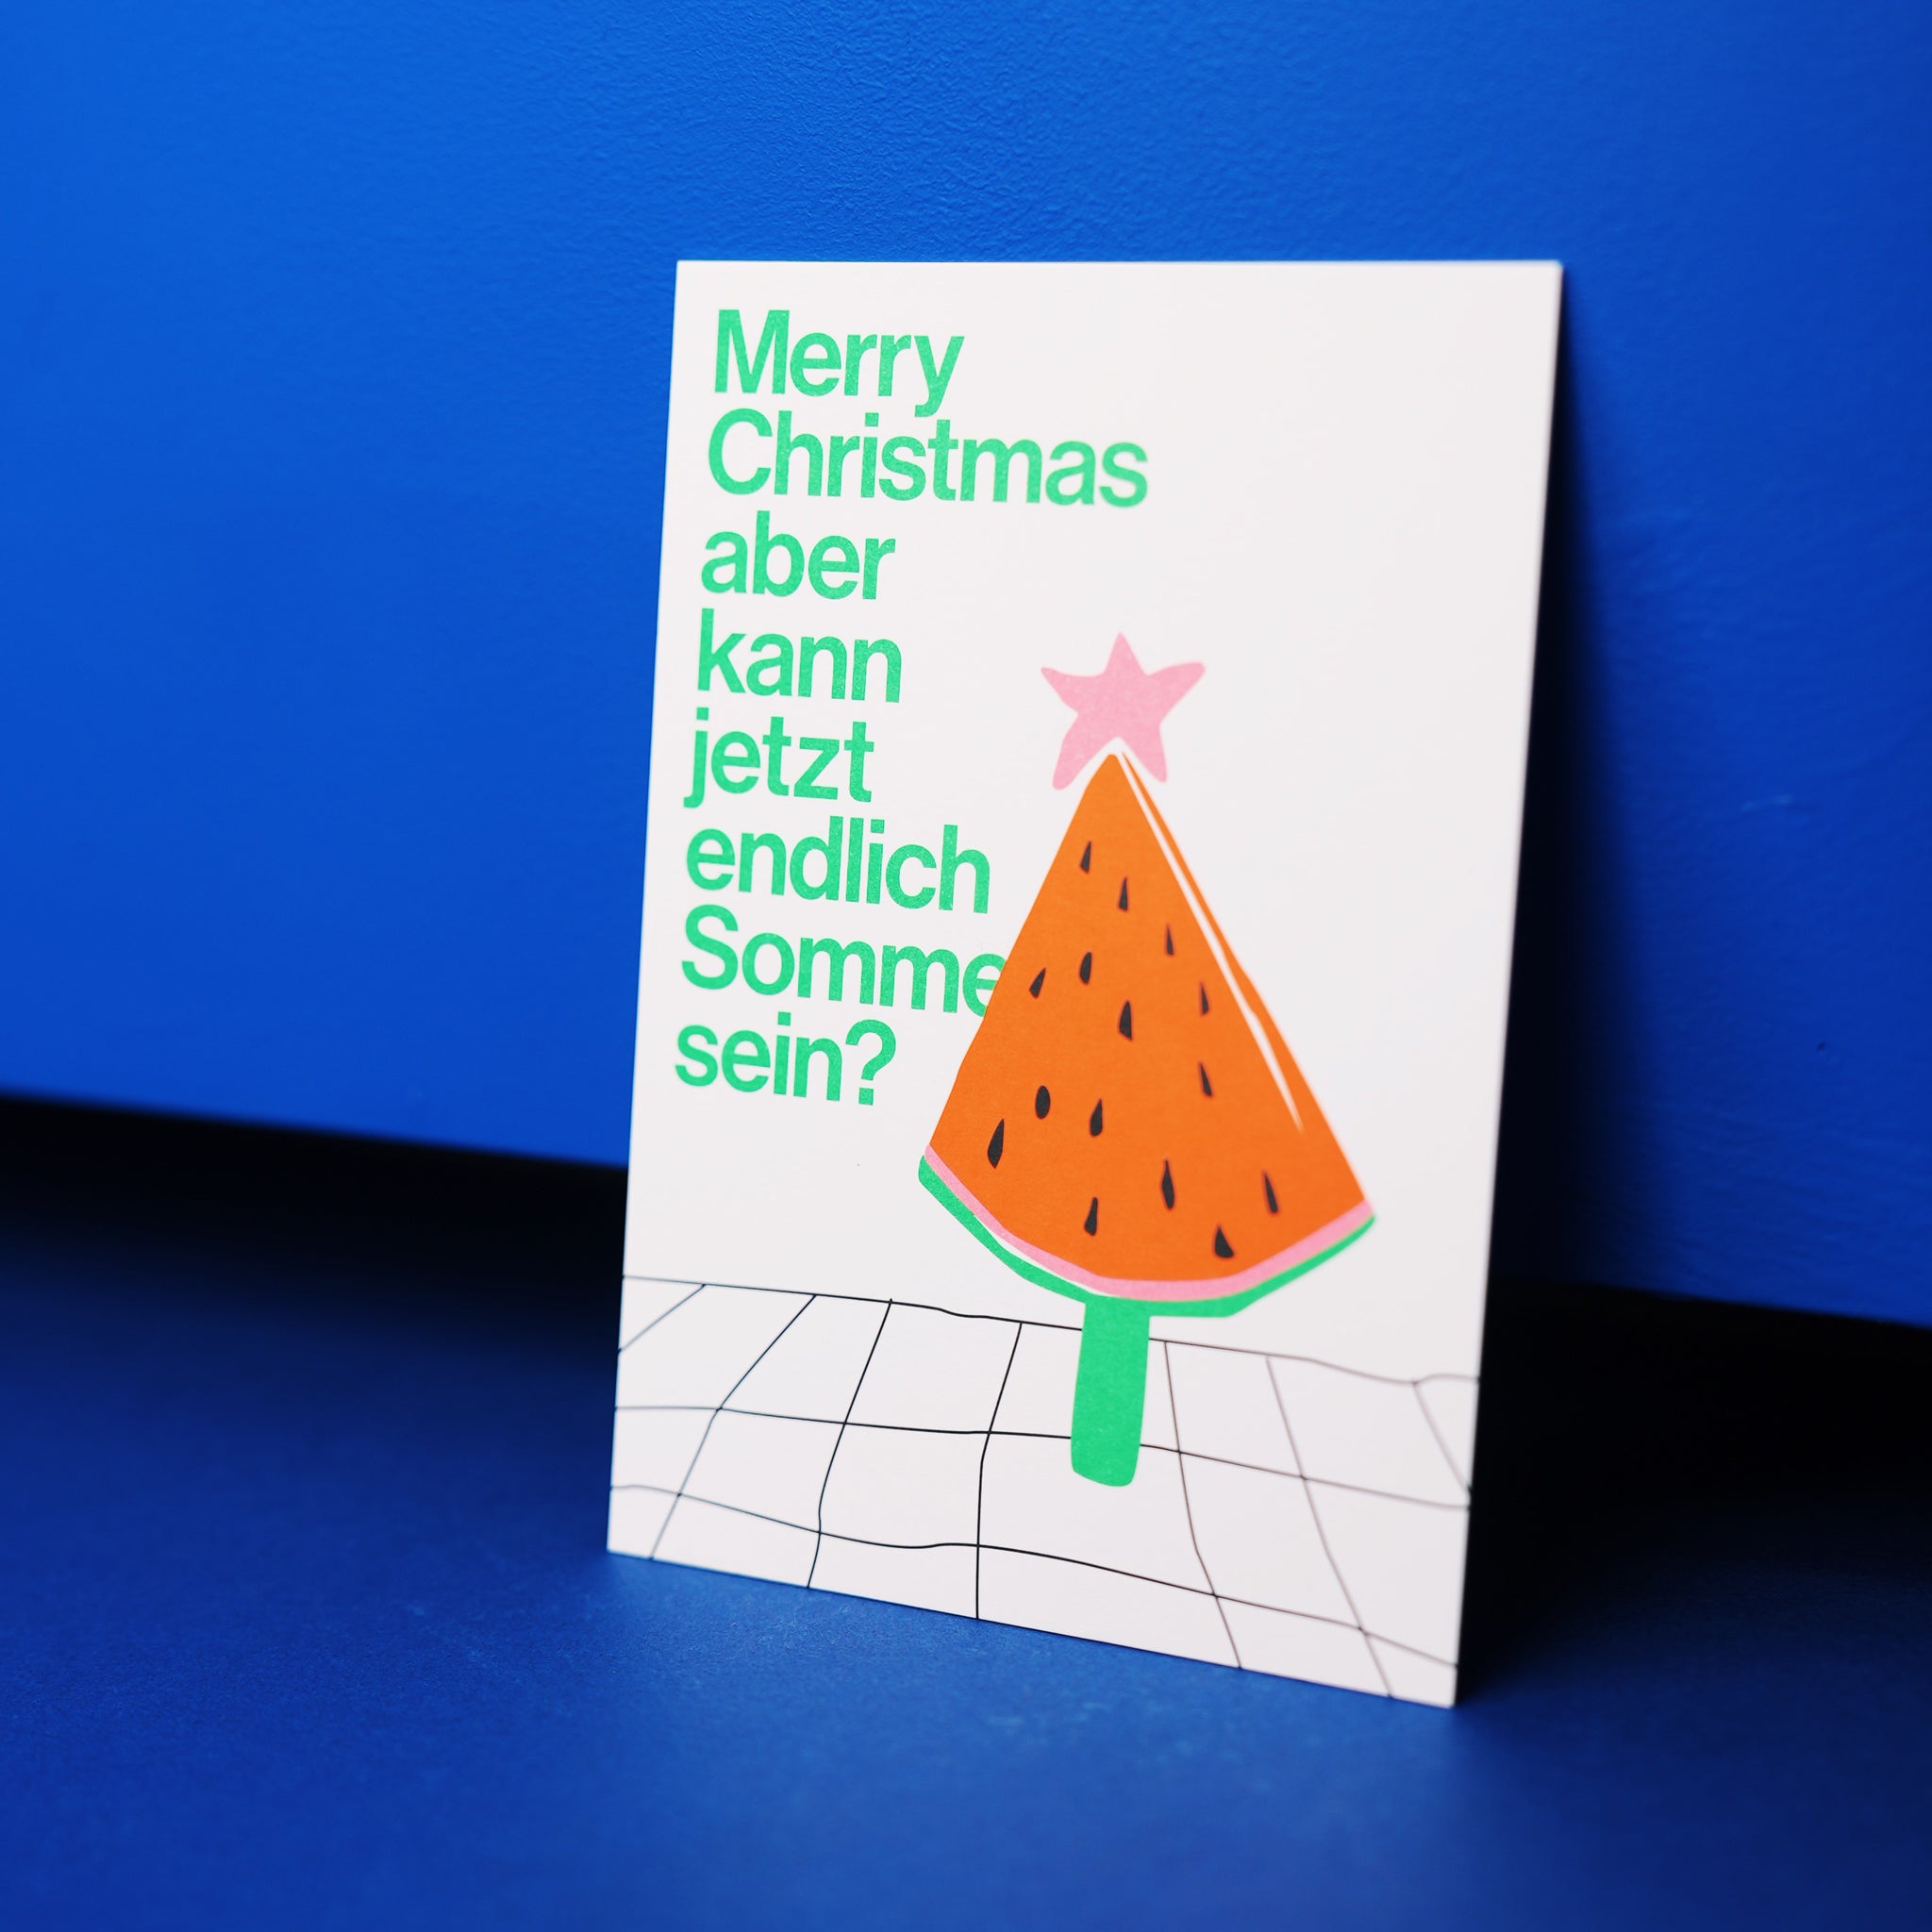 esistfreitag-Postkarte: Merry Christmas aber kann jetzt endlich Sommer sein?